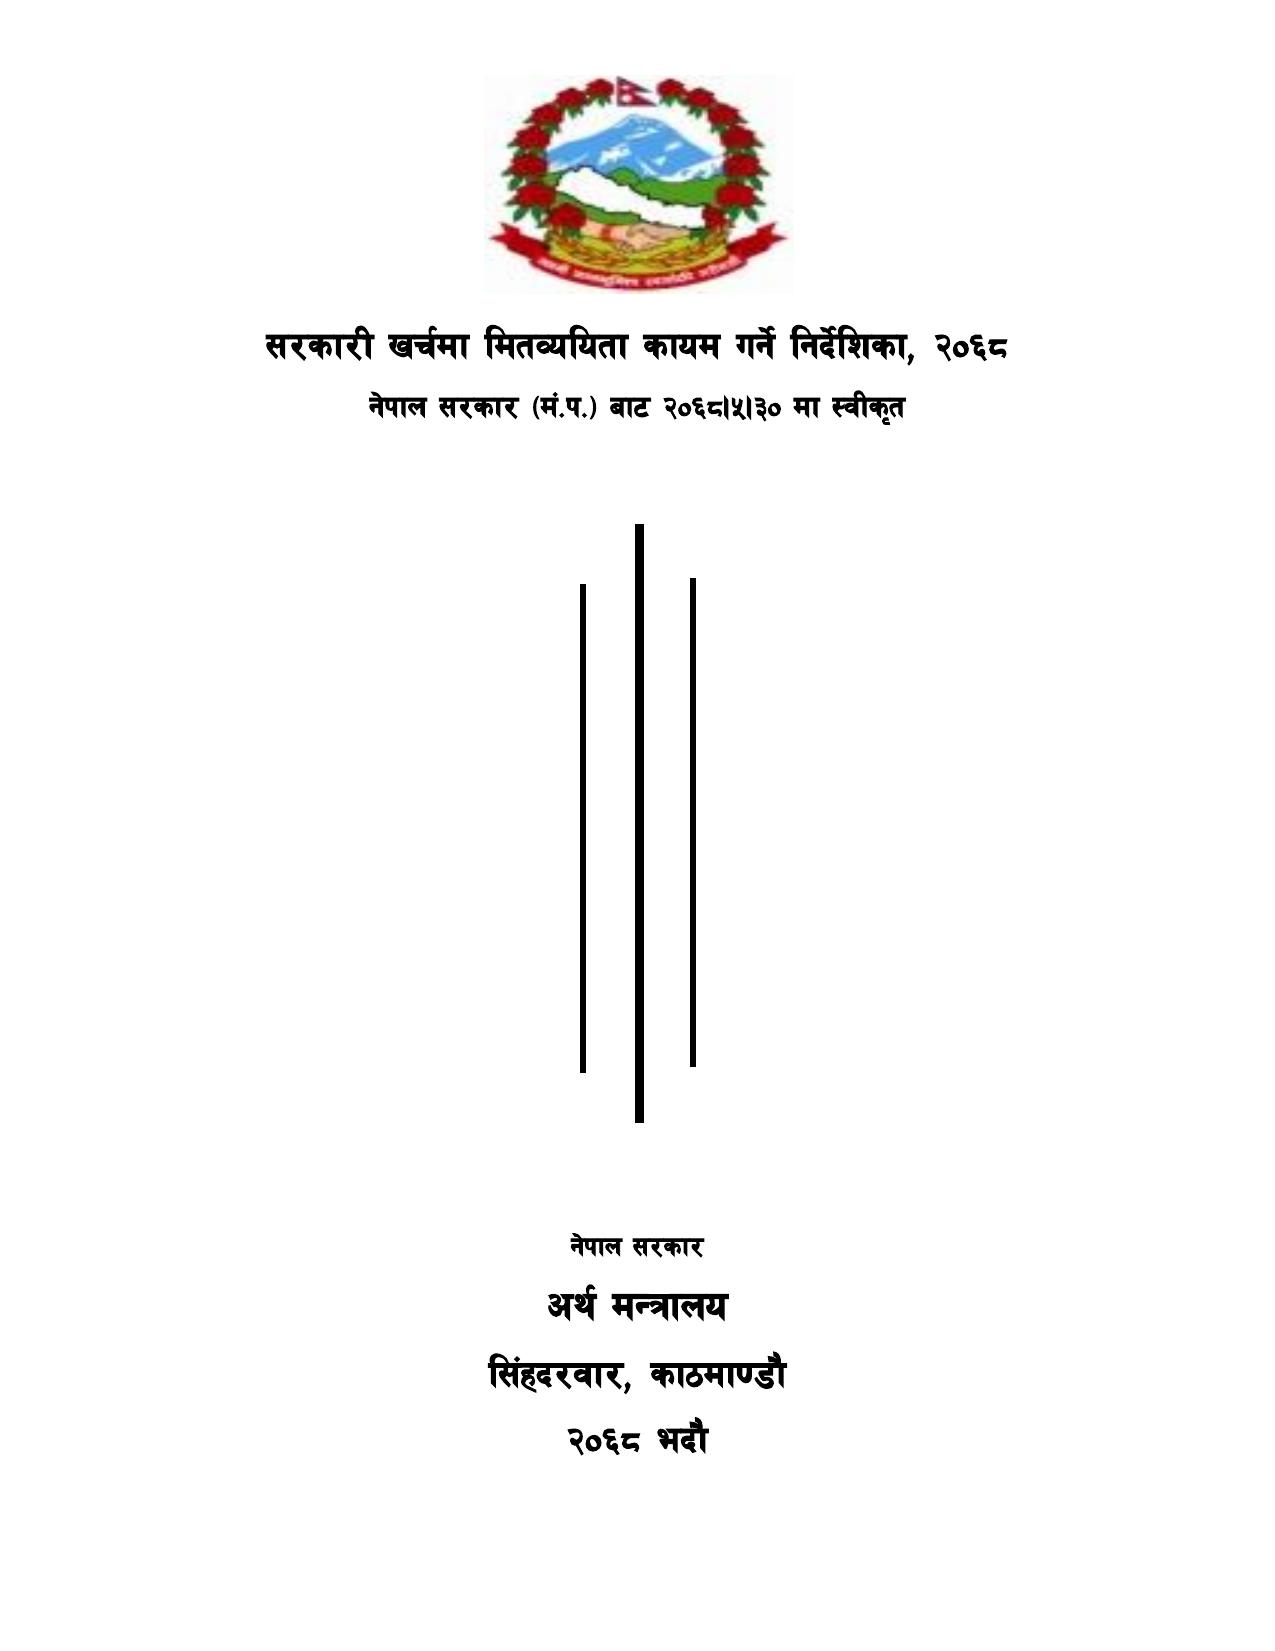 सरकारी खर्चमा मितव्ययिता कायम गर्ने निर्देशिका, २०६८